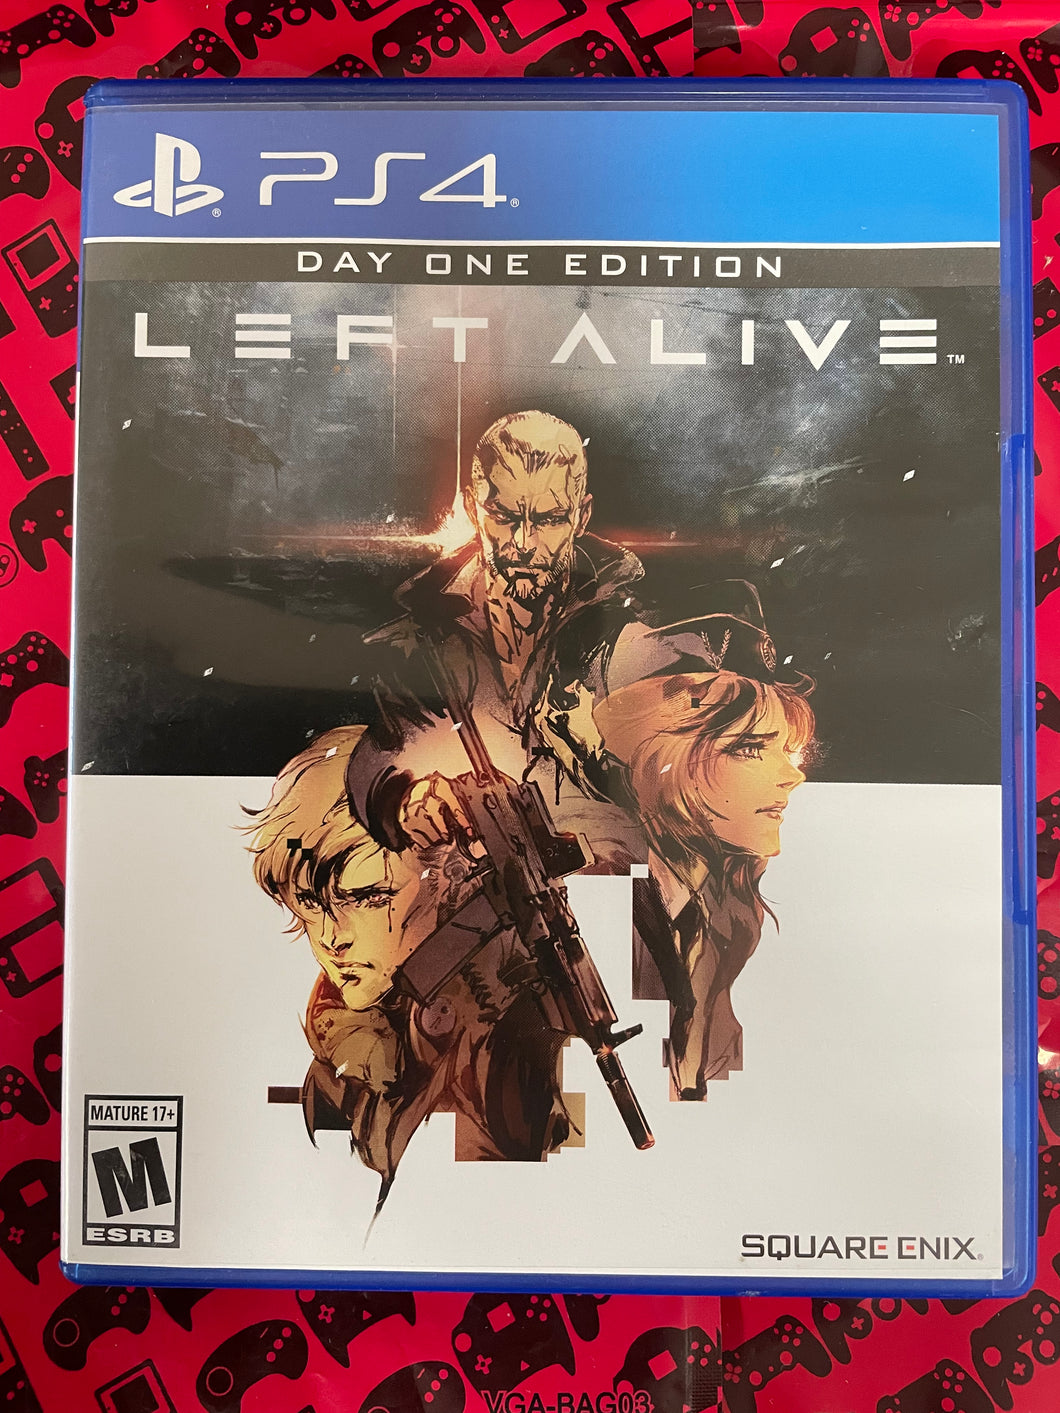 Left Alive Playstation 4